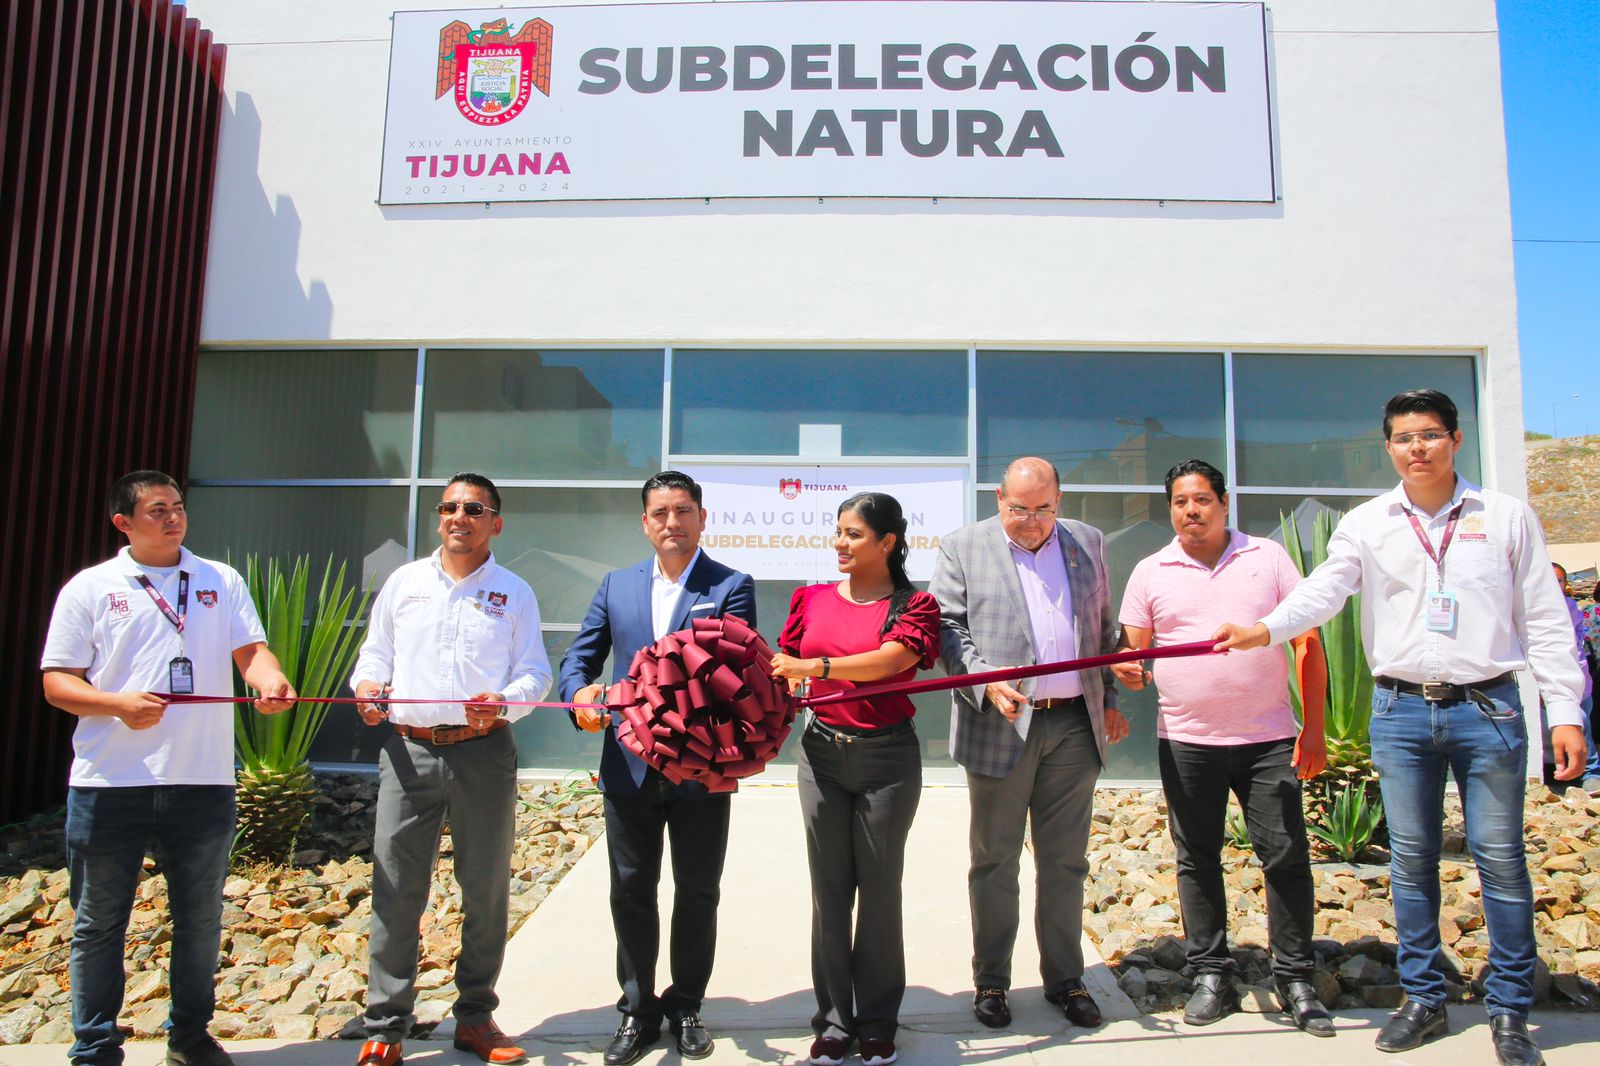 Alcaldesa Montserrat Caballero inaugura Subdelegación Natura